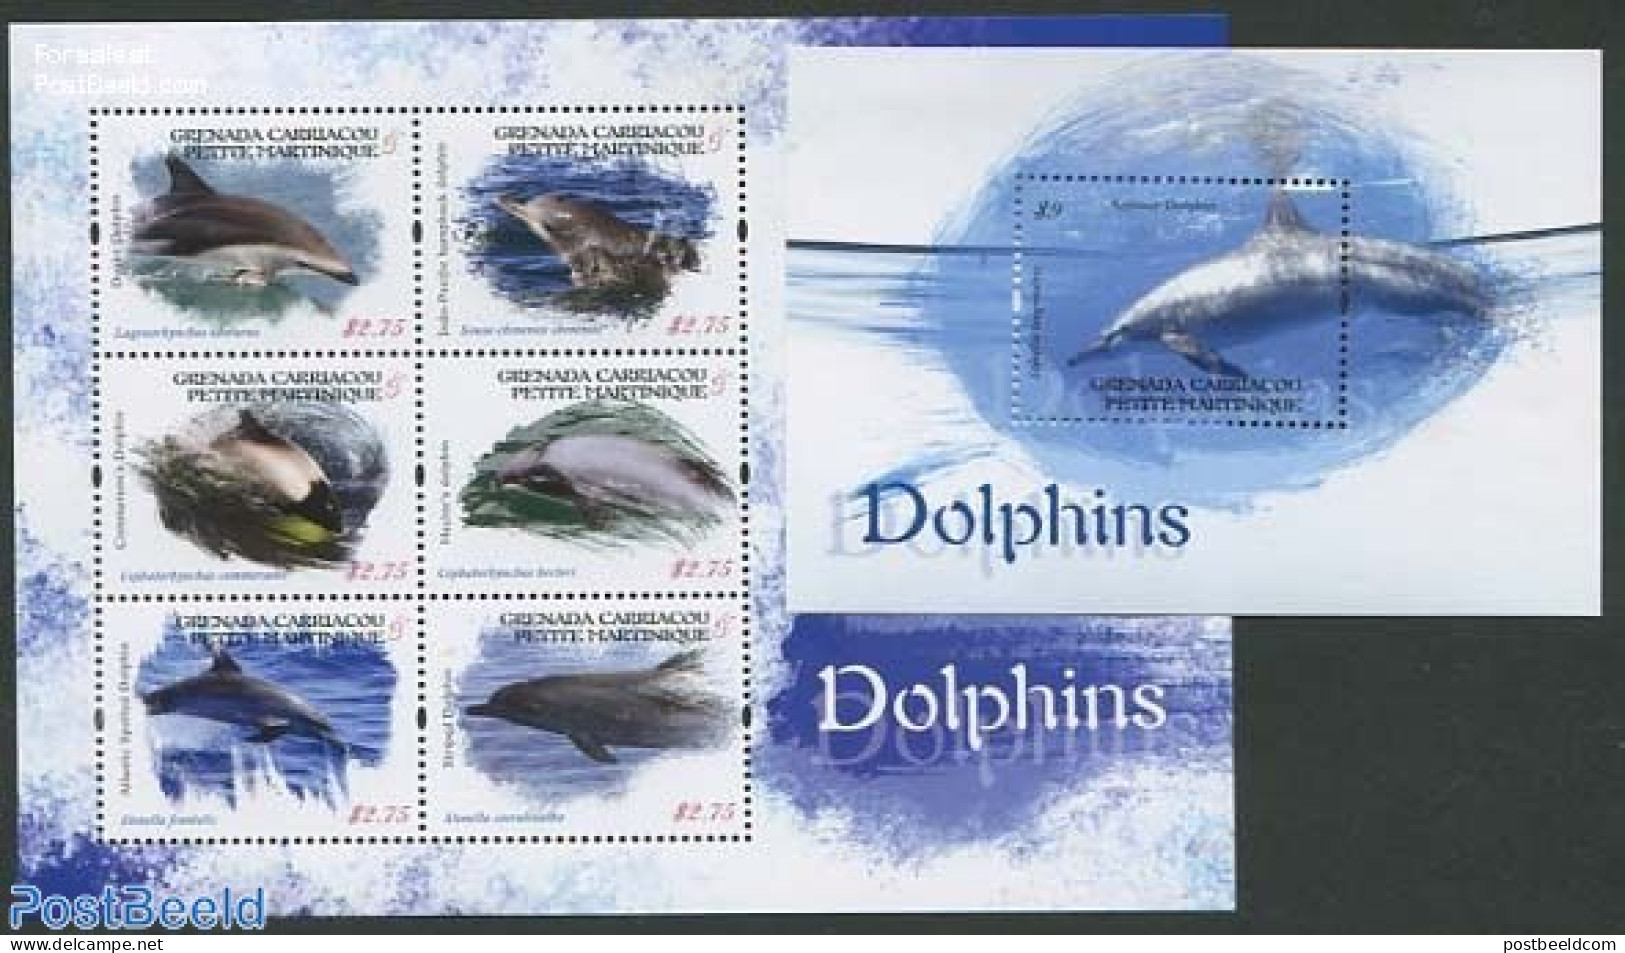 Grenada Grenadines 2013 Petite Martinique, Dolphins 2 S/s, Mint NH, Nature - Sea Mammals - Grenada (1974-...)